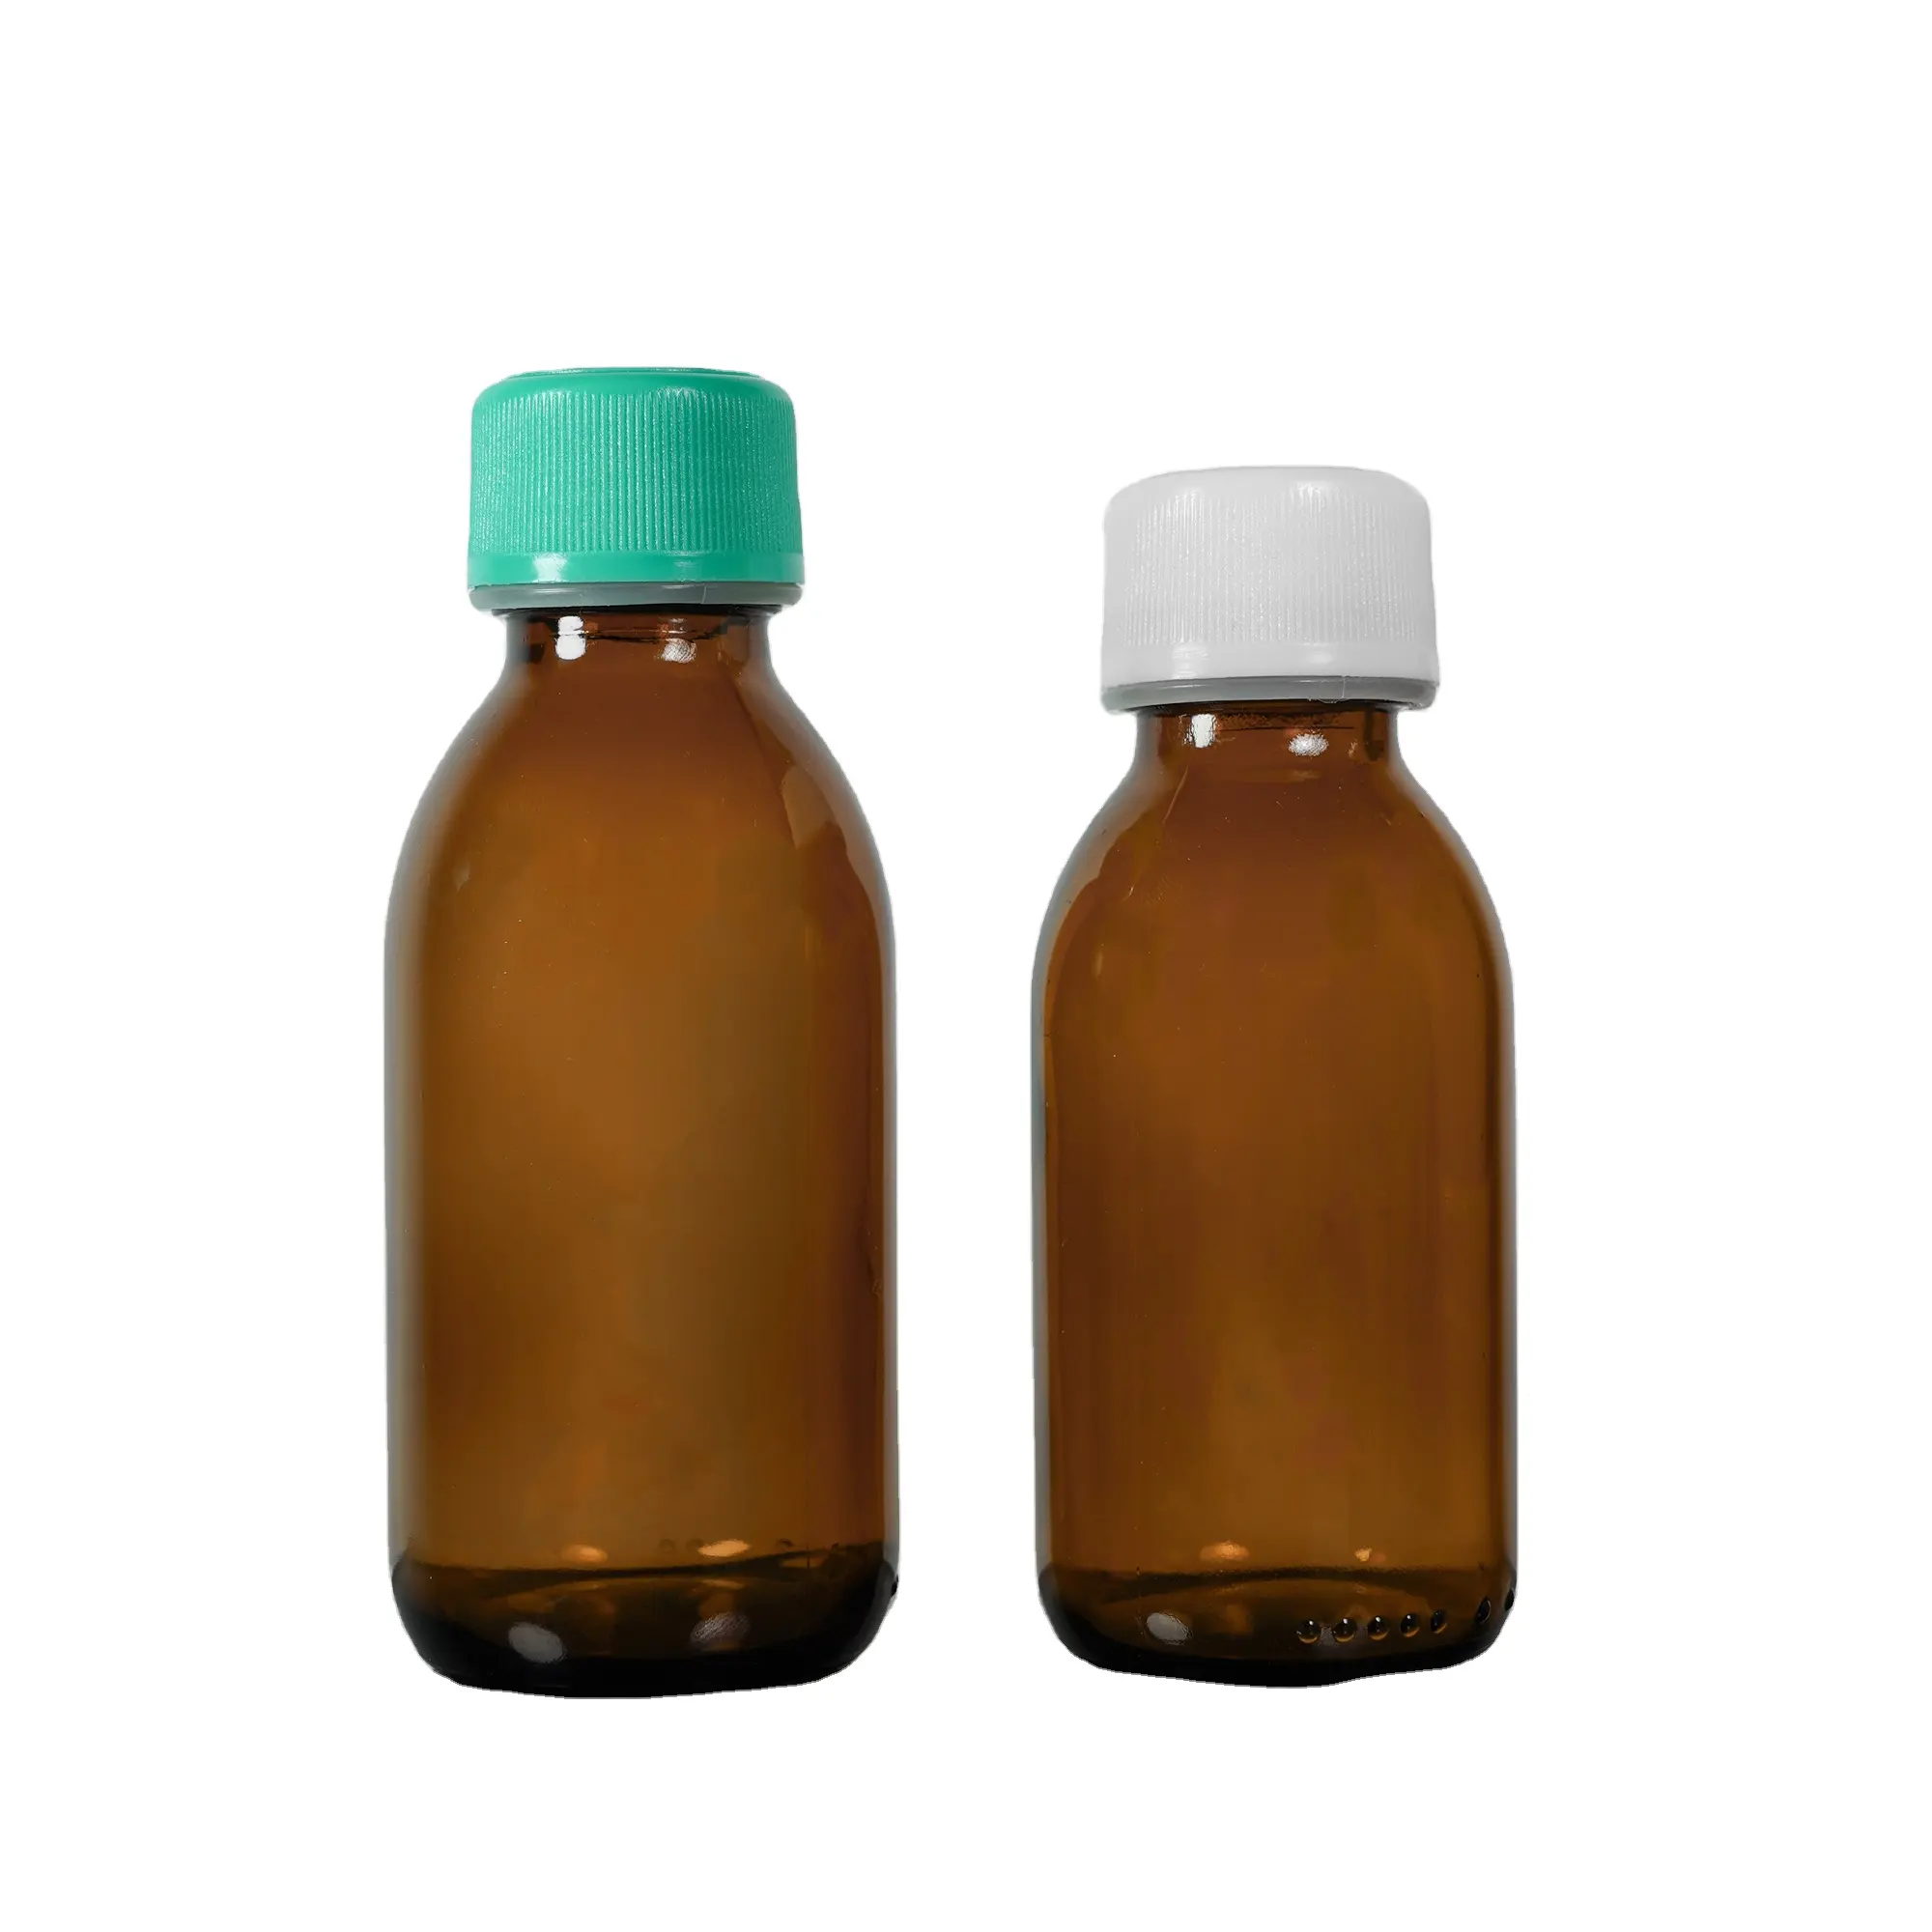 Ilaç ambalaj için ilaç cam şişeler plastik şişe için hdpe şişeler ilaç cam şişeler ilaç